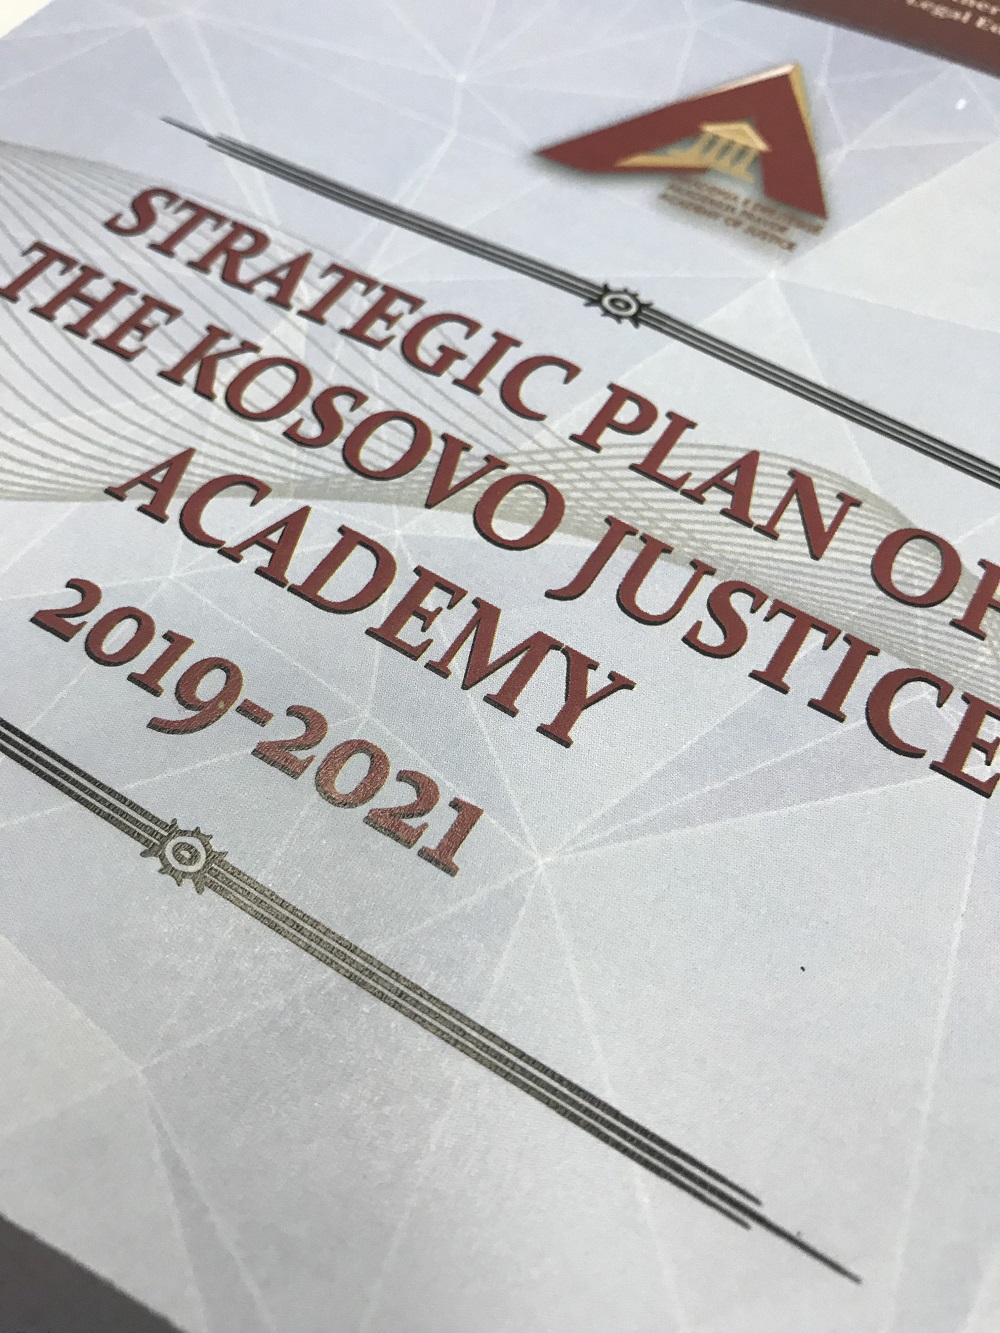 Améliorer les programmes de formation de l'Ecole de la Magistrature au Kosovo* avec les normes de la CEPEJ